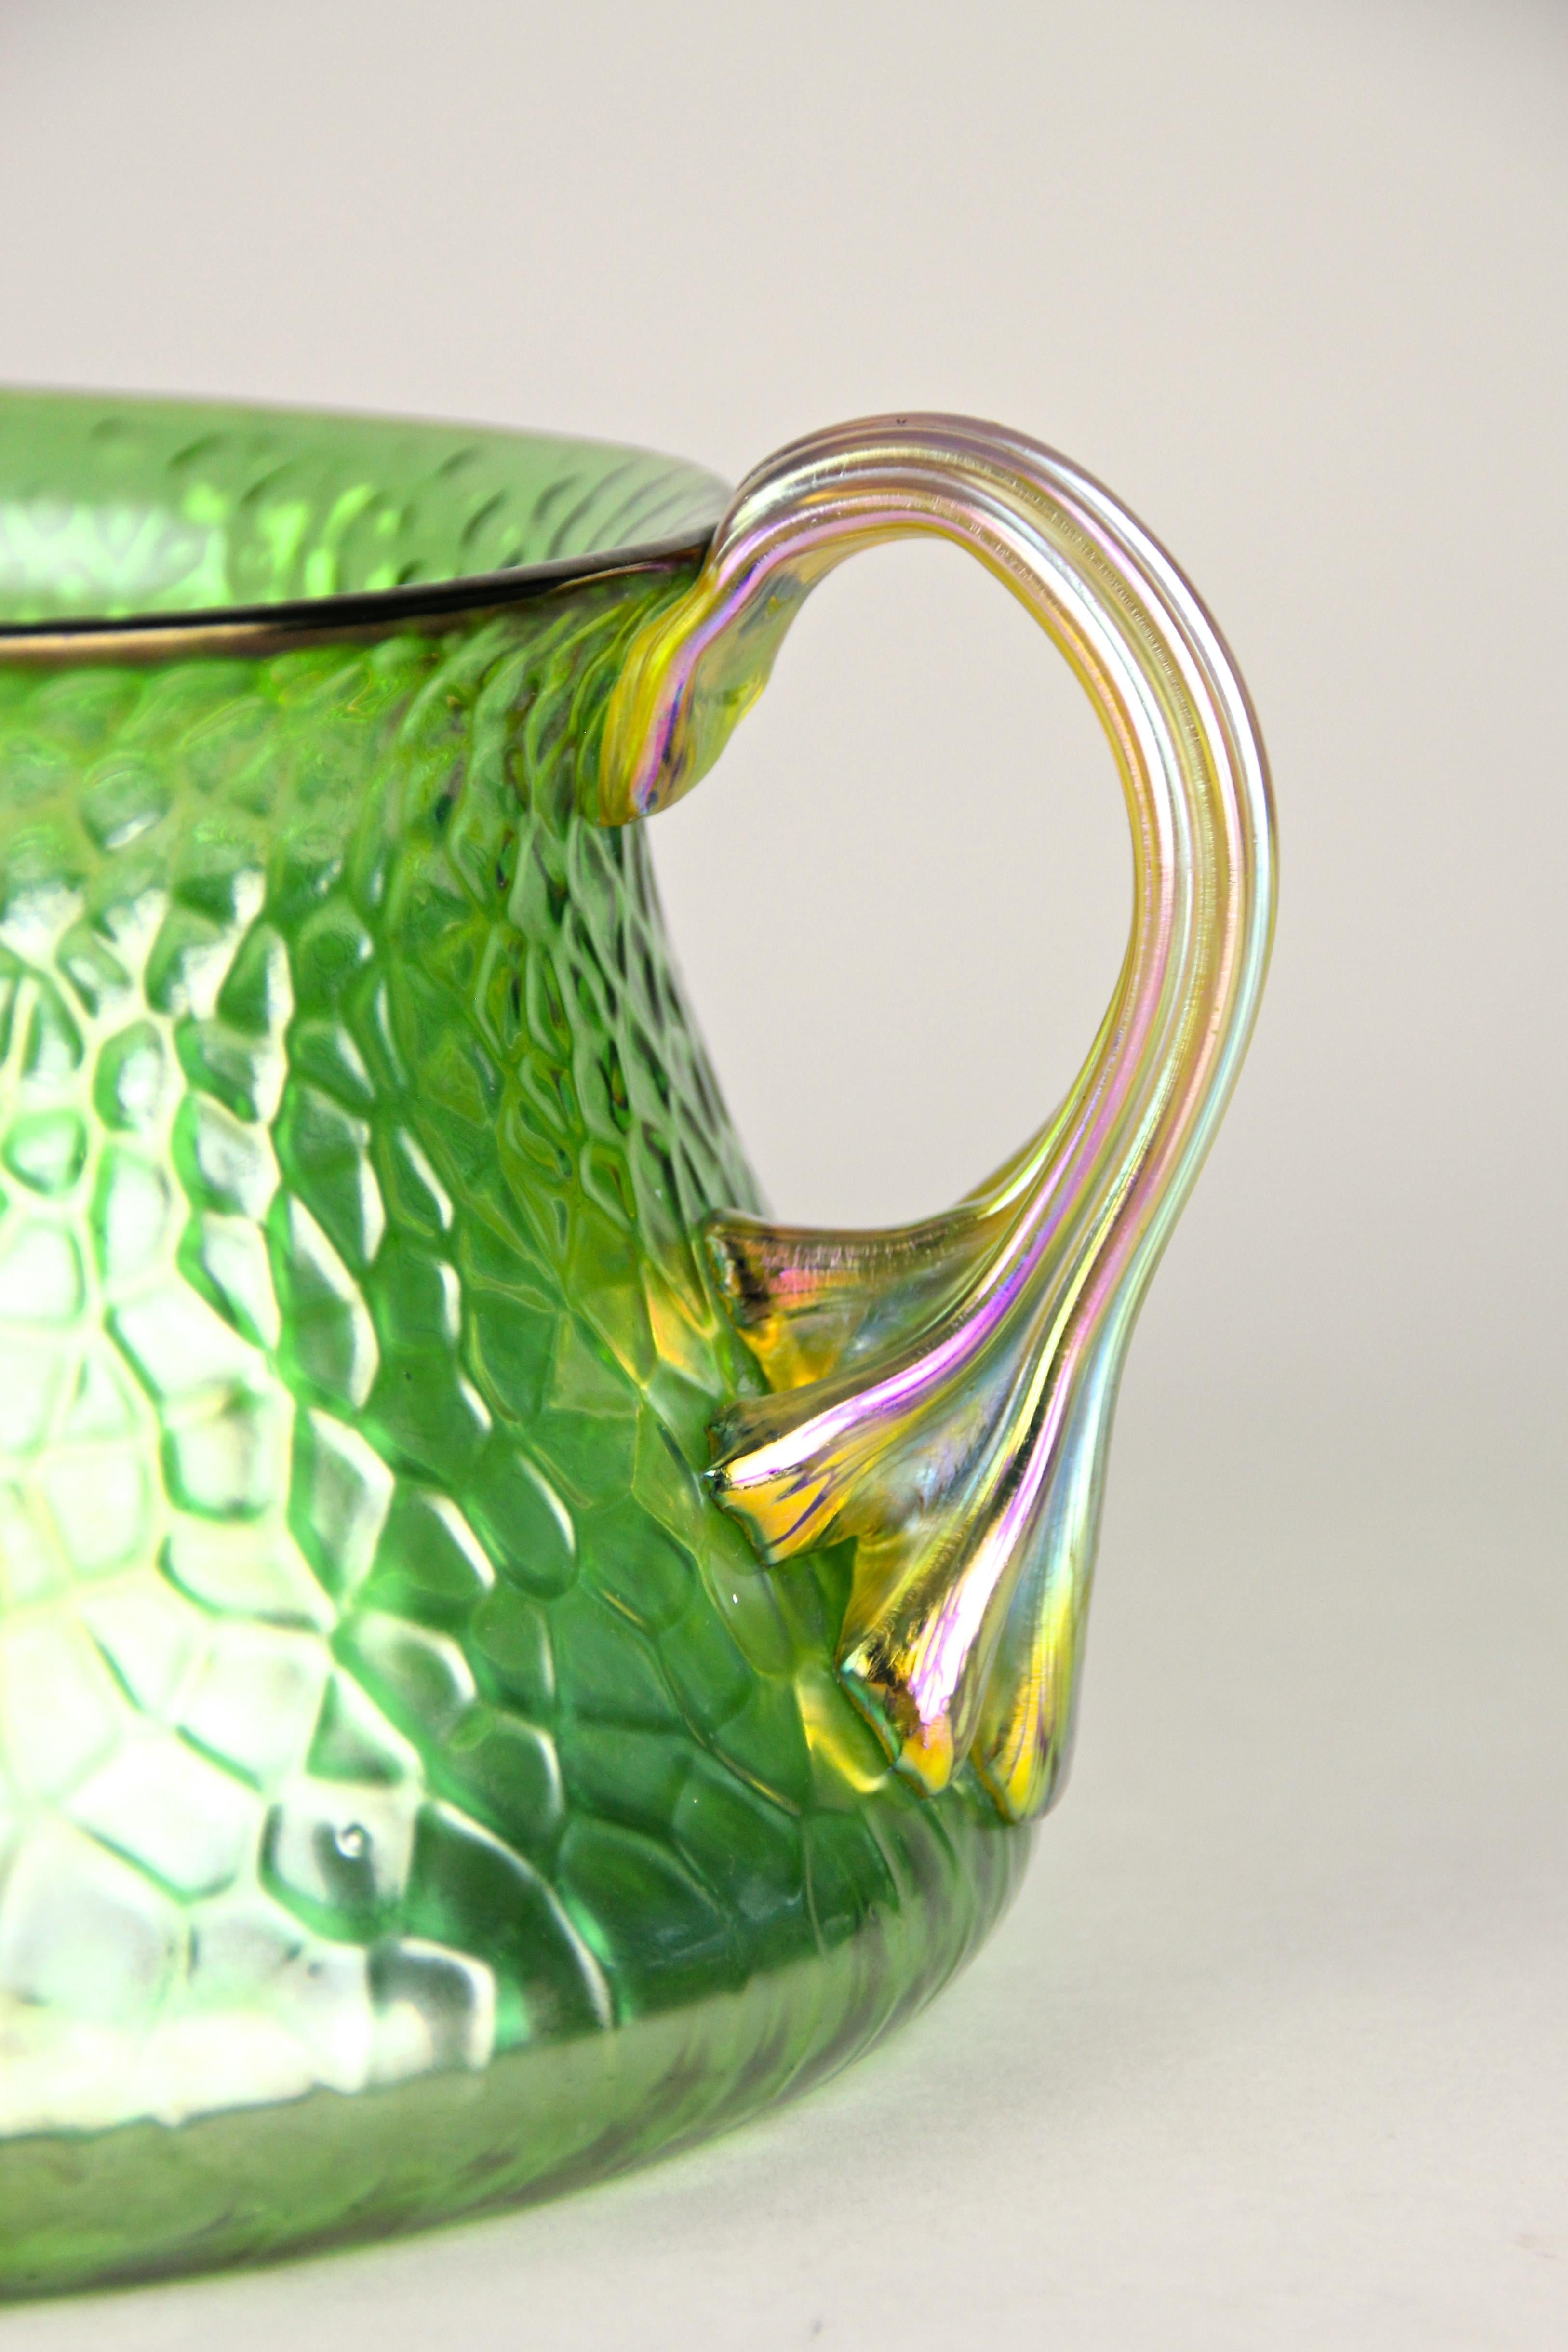 Lovely green glass bowl in Decor Martelé (french for 